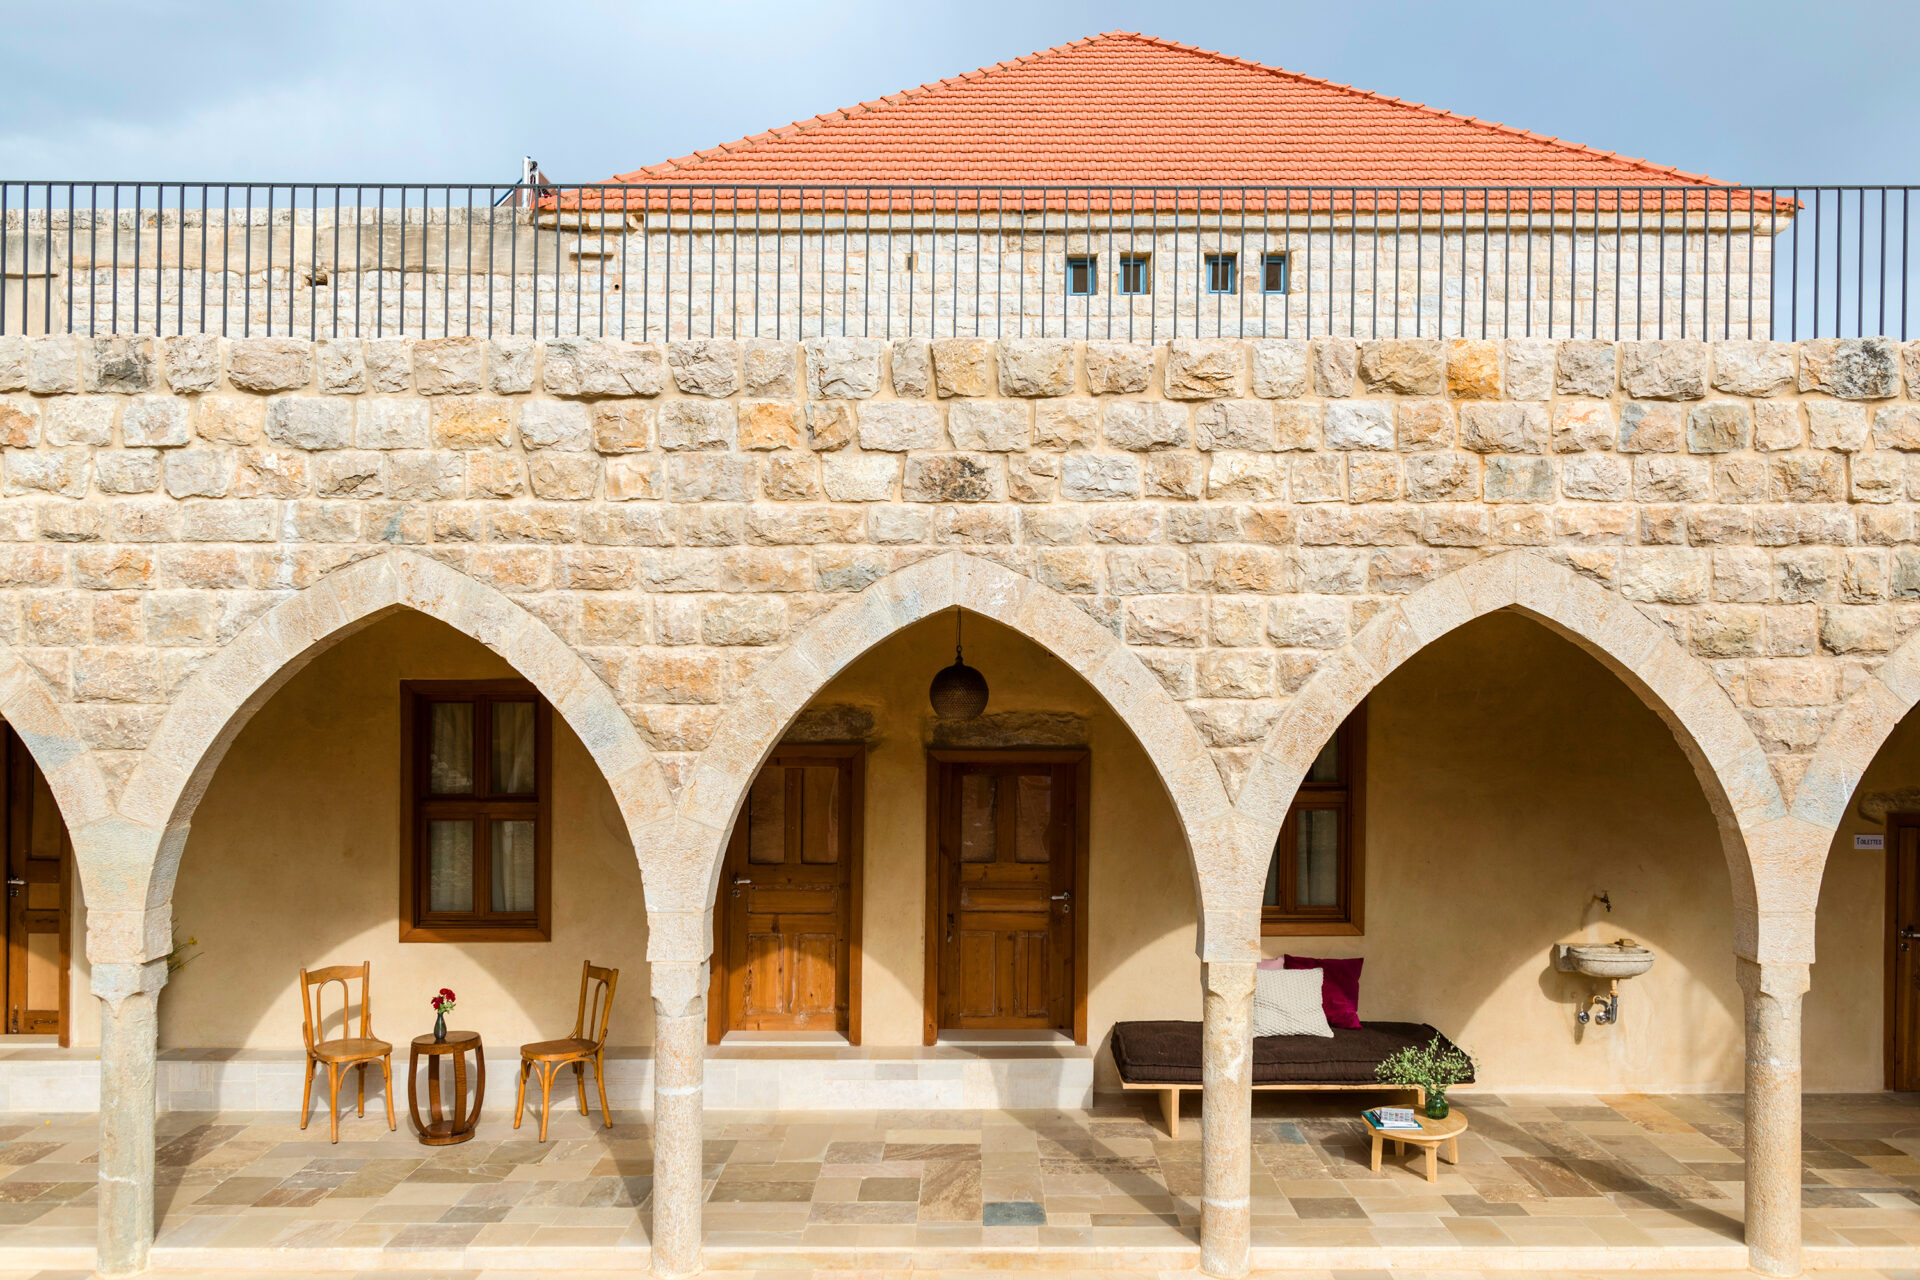 Hotels in Lebanon - La Maison des Sources